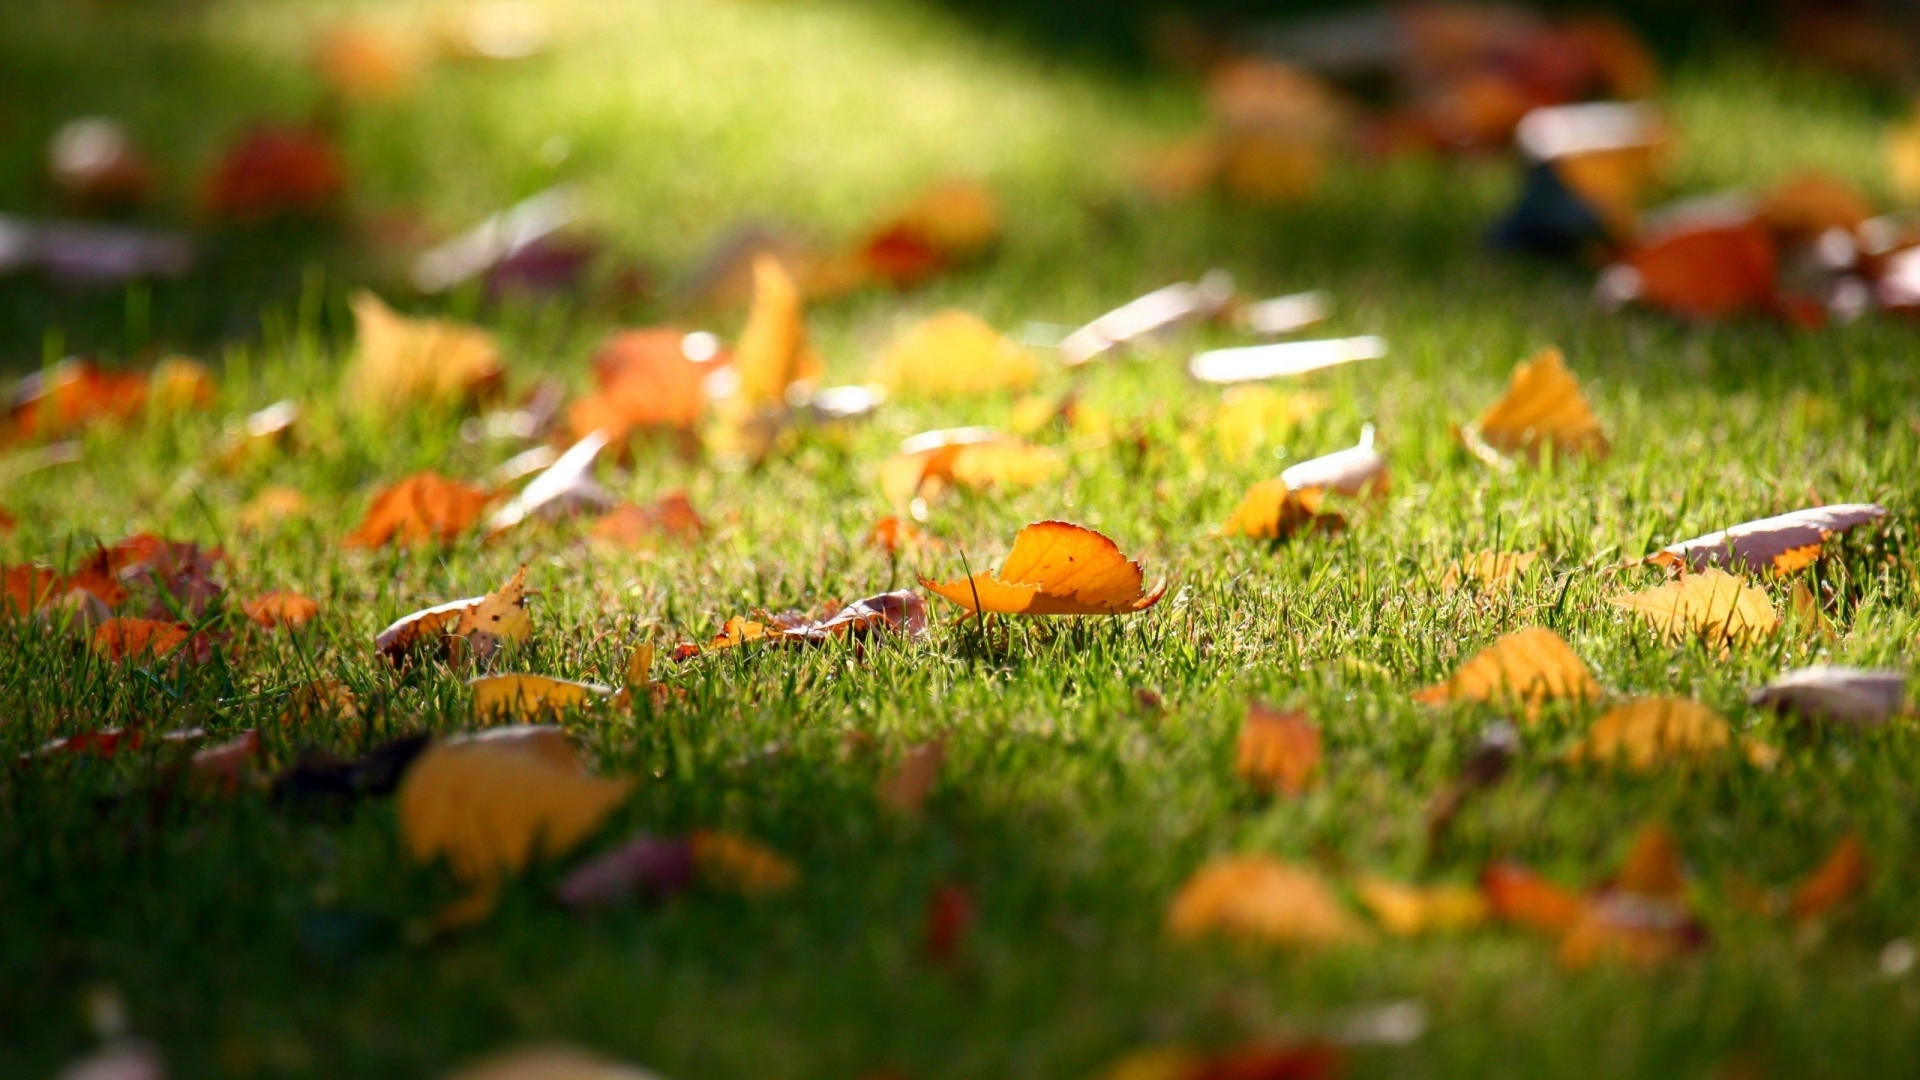 Carpet of Leaves for 1920 x 1080 HDTV 1080p resolution